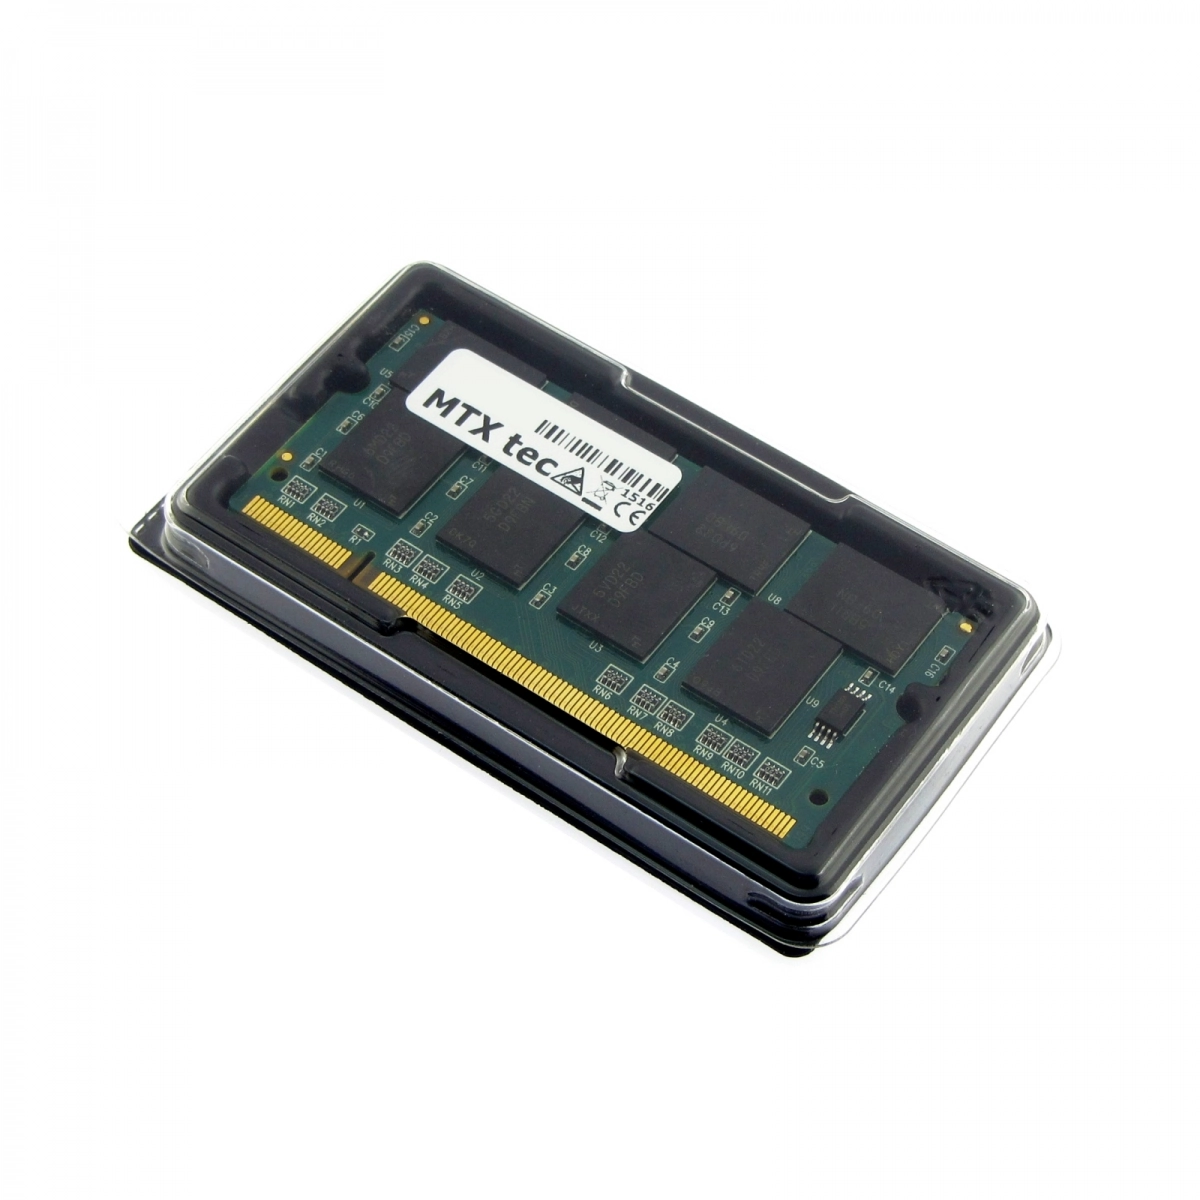 MTXtec Arbeitsspeicher 512 MB RAM für ASUS A2500H